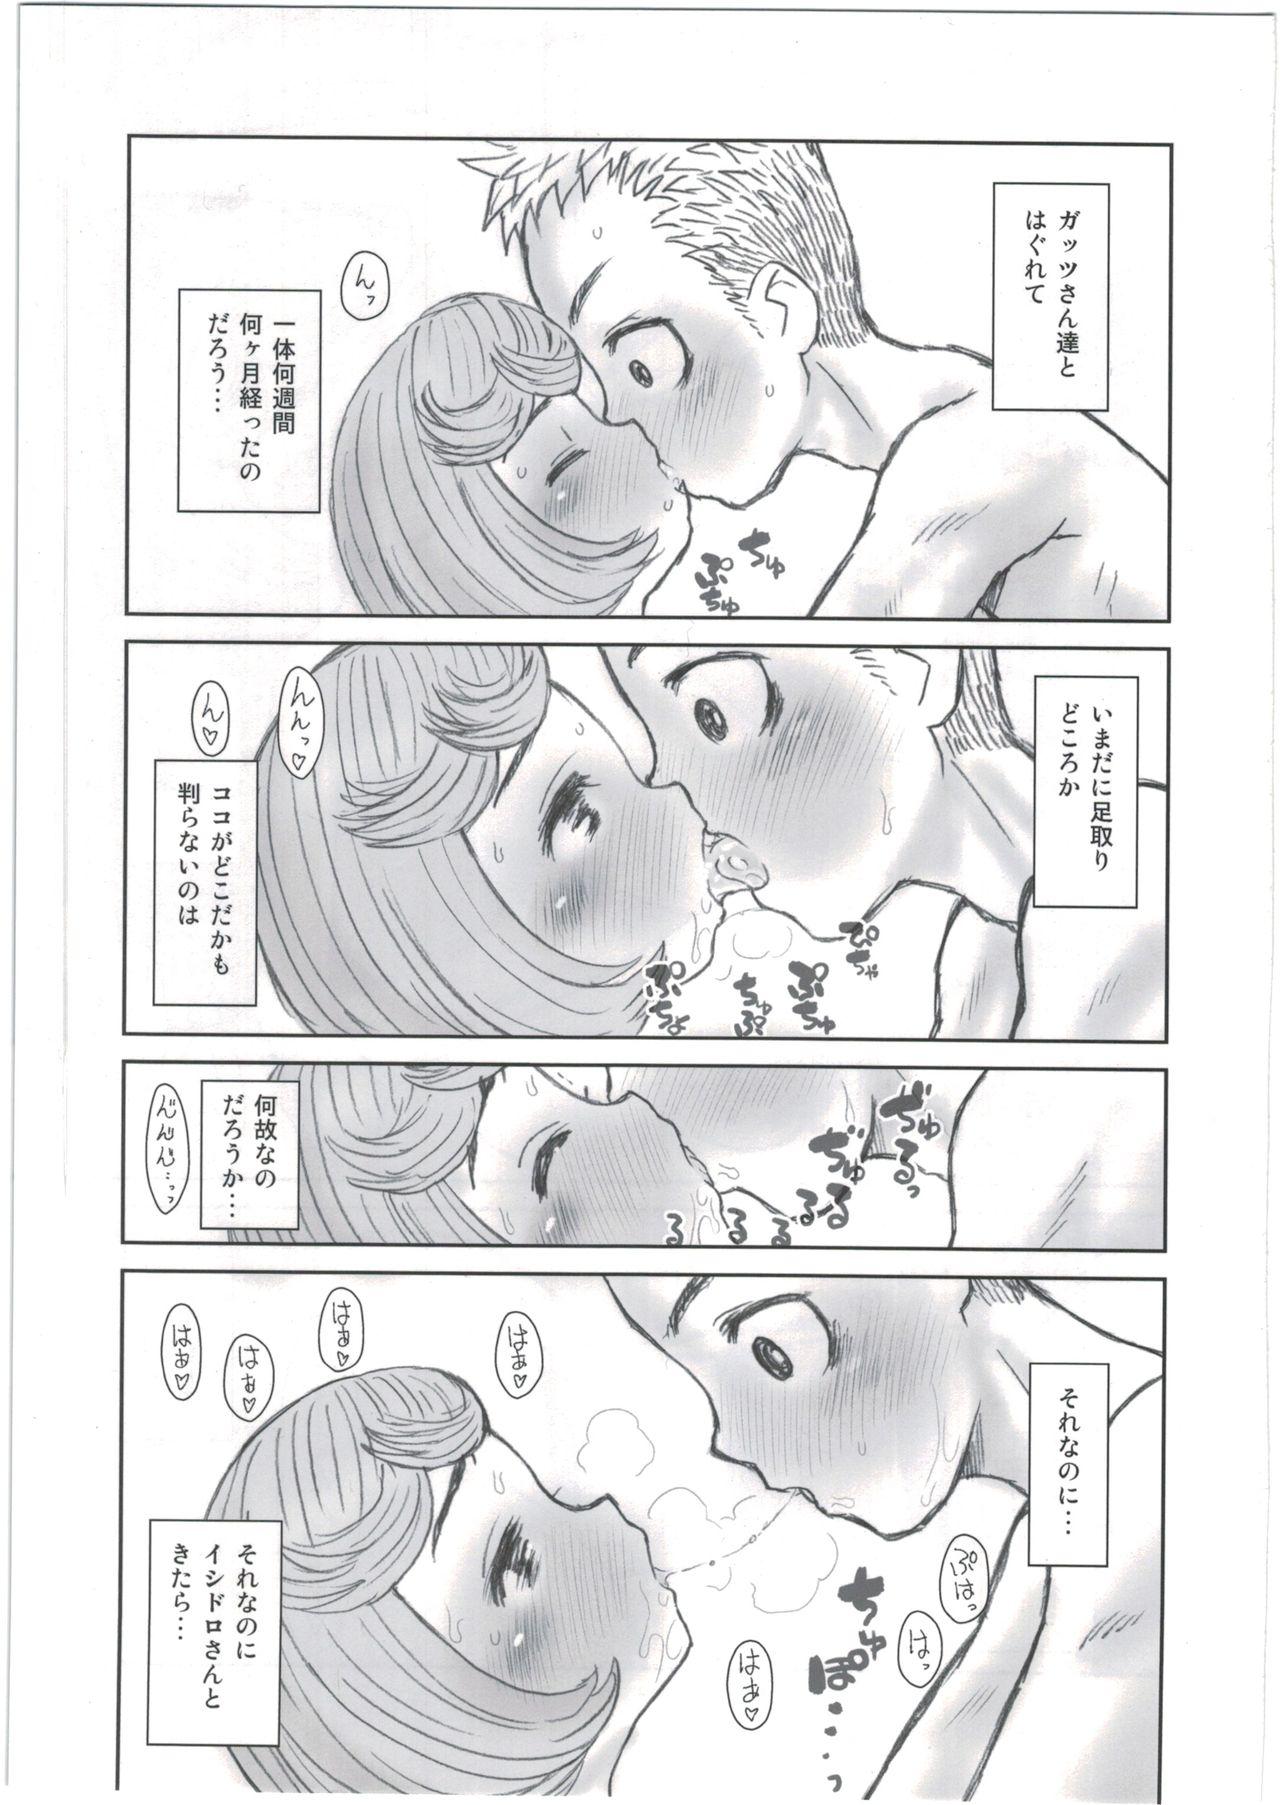 Bucetuda Hinnyuu Musume 35 - Berserk Hand - Page 5